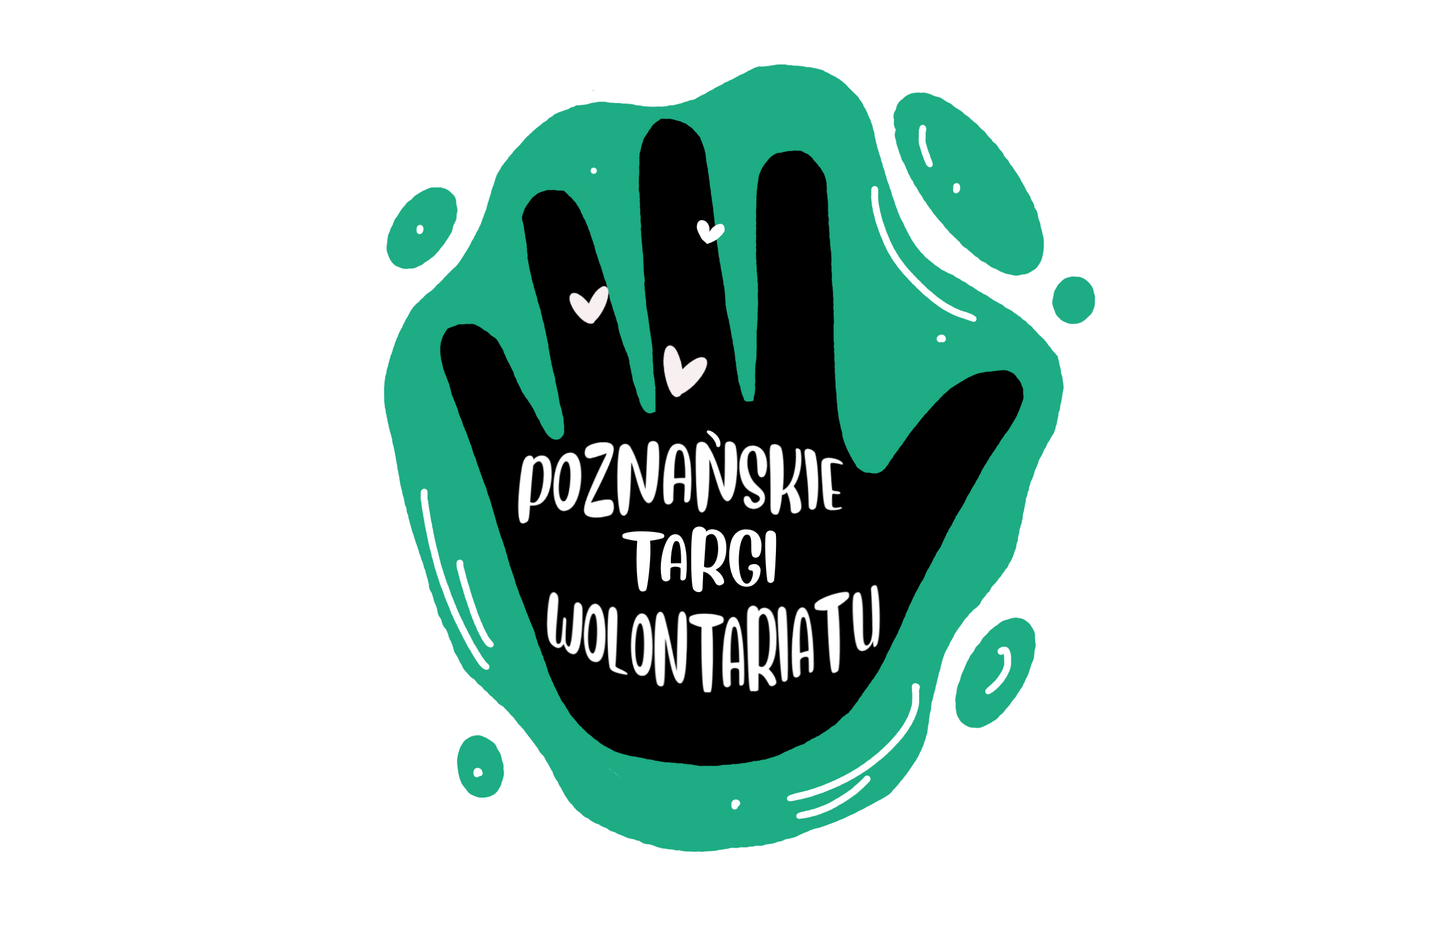 Logo Poznańskich Targów Wolontariatu to odciśnięta dłoń symbolizująca chęć pomagania i współpracę